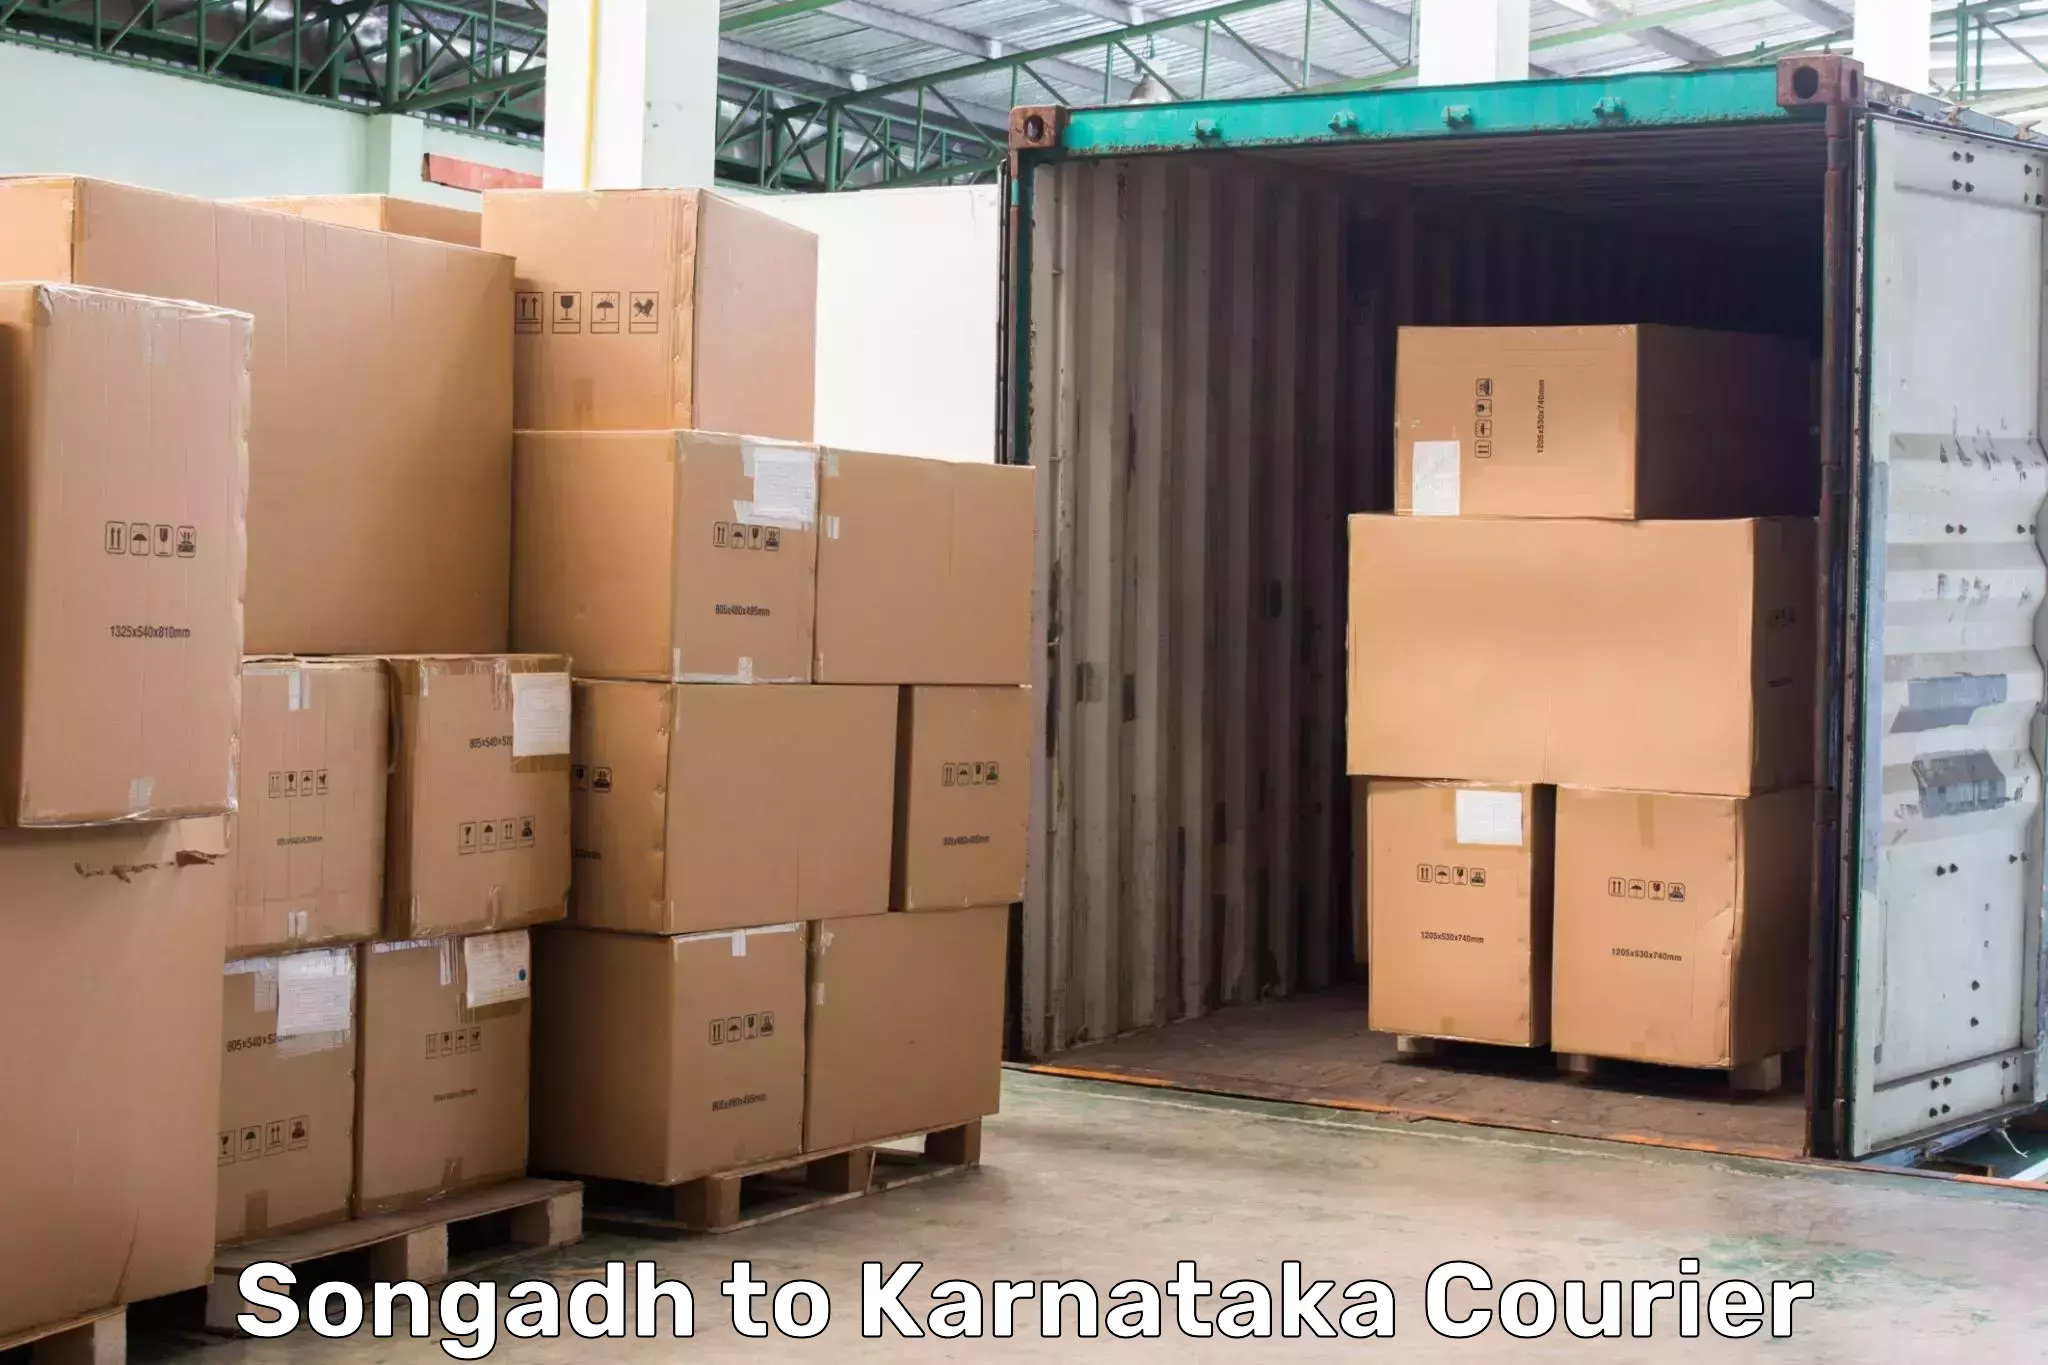 High-speed parcel service Songadh to Jayanagar